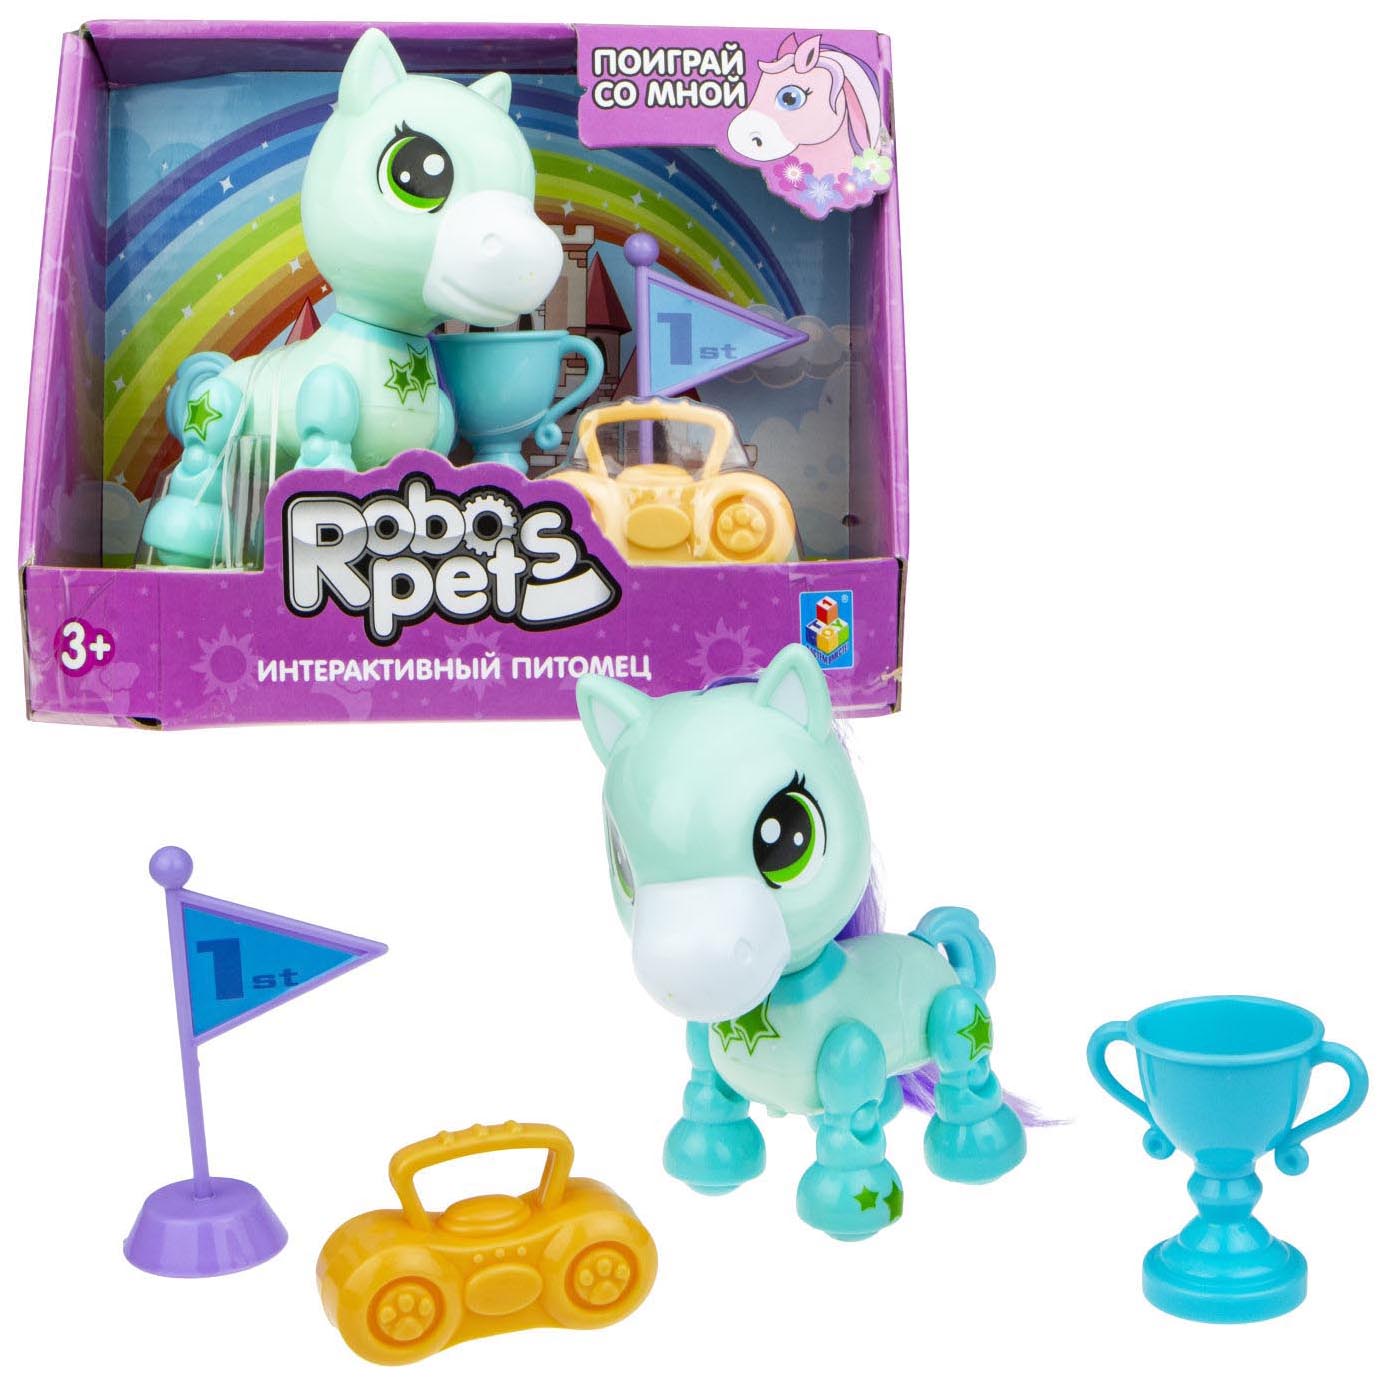 Интерактивная игрушка 1toy Robo Pets Игривый пони Т16978 мятный 1toy игрушка сквиши мммняшка squishy мороженое т12317 toy1 упаковка 3